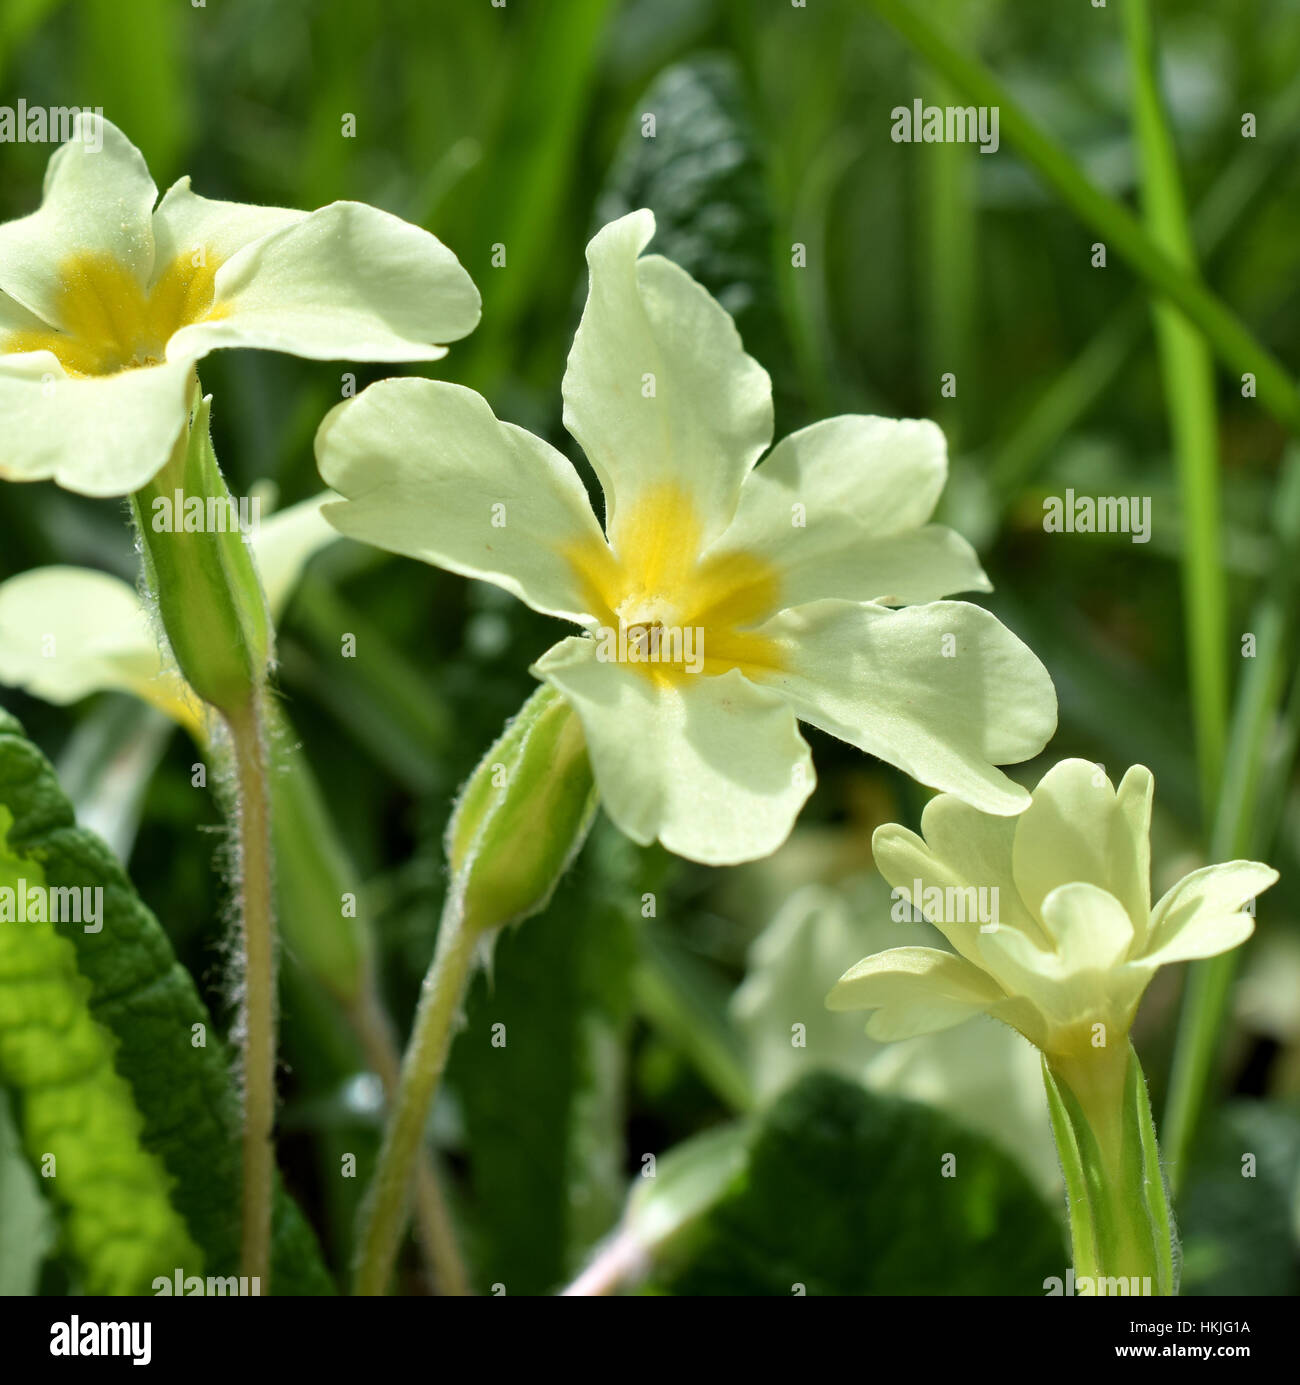 Primrose flowers Stock Photo